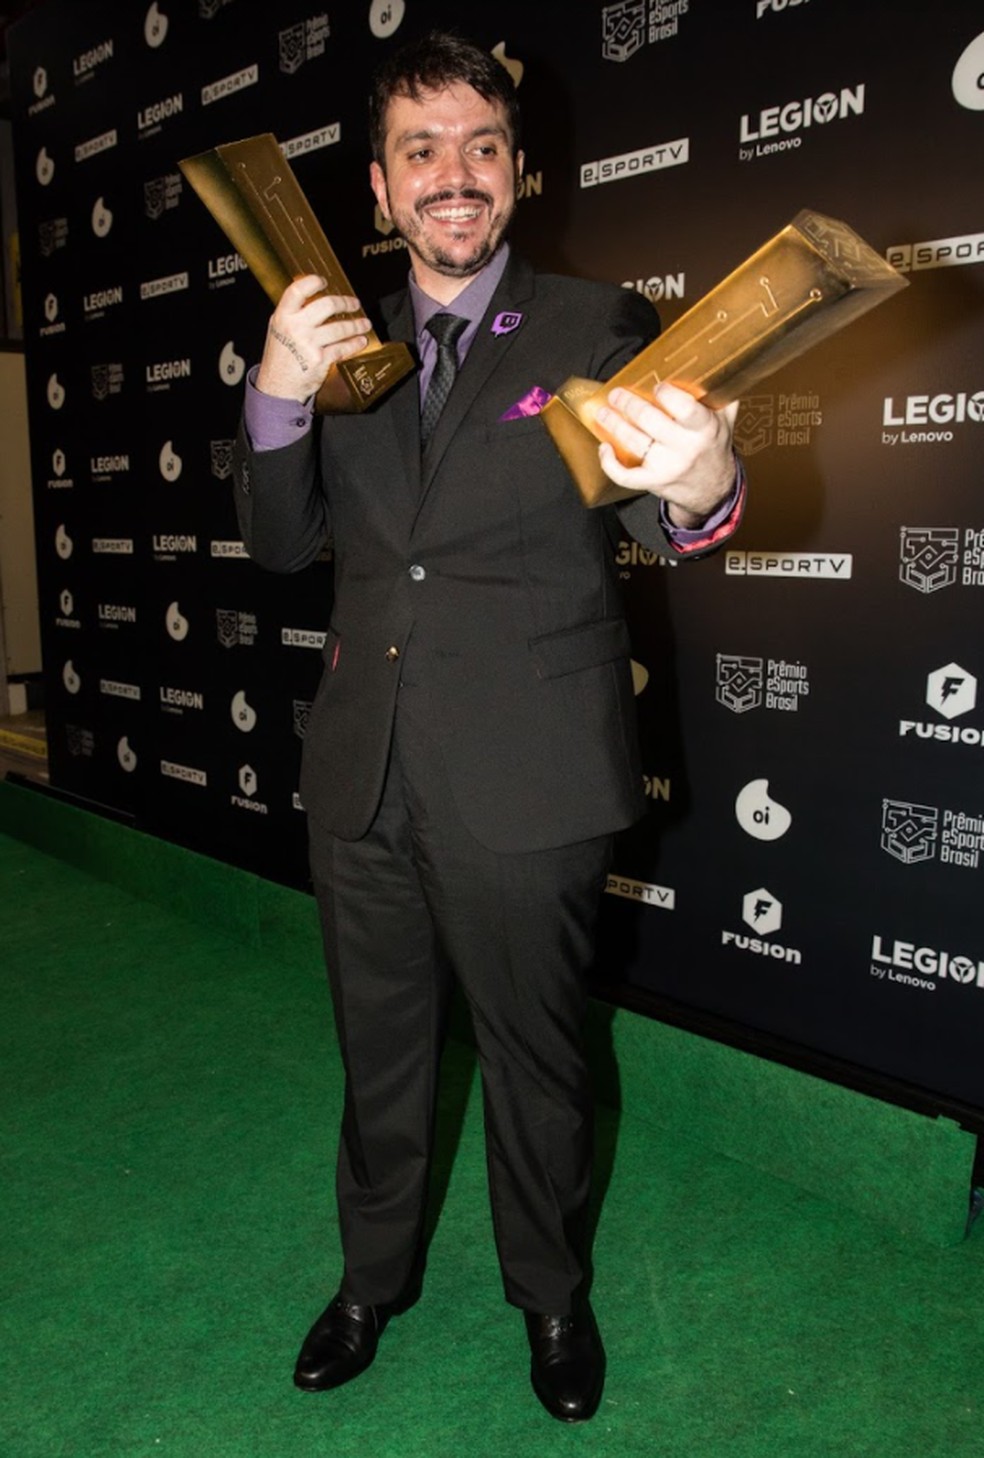 Gaules vence prêmios de Melhor Streamer e Personalidade do Ano